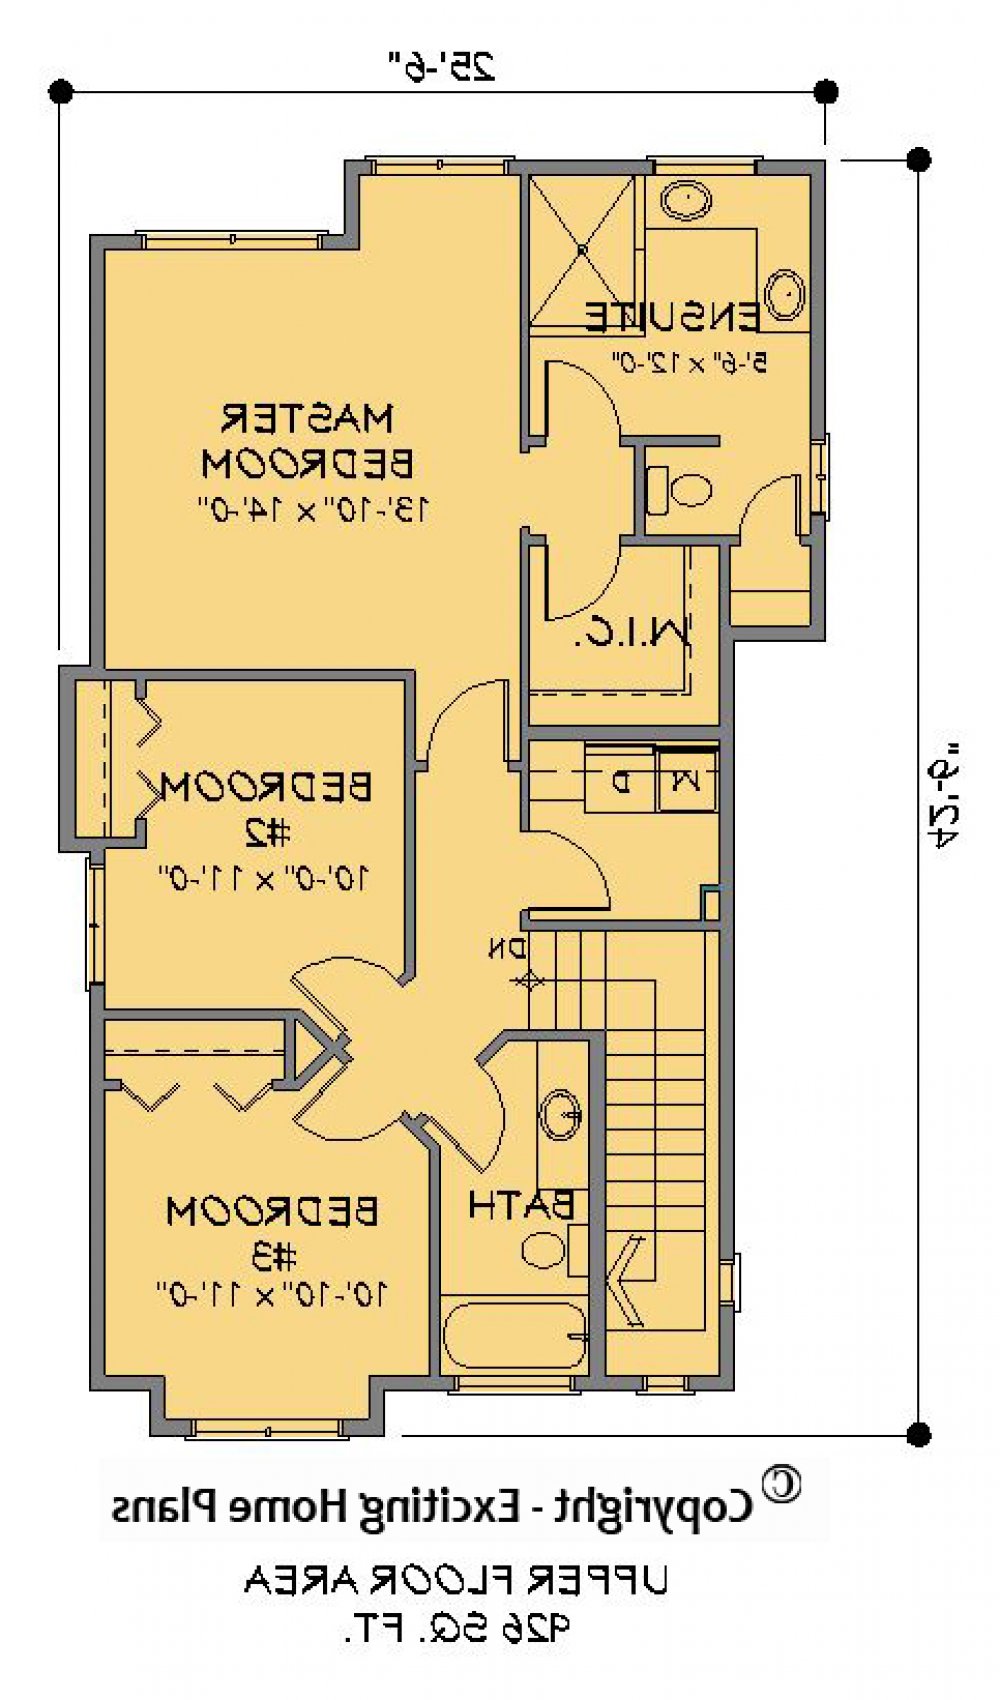 House Plan E1205-10 Upper Floor Plan REVERSE